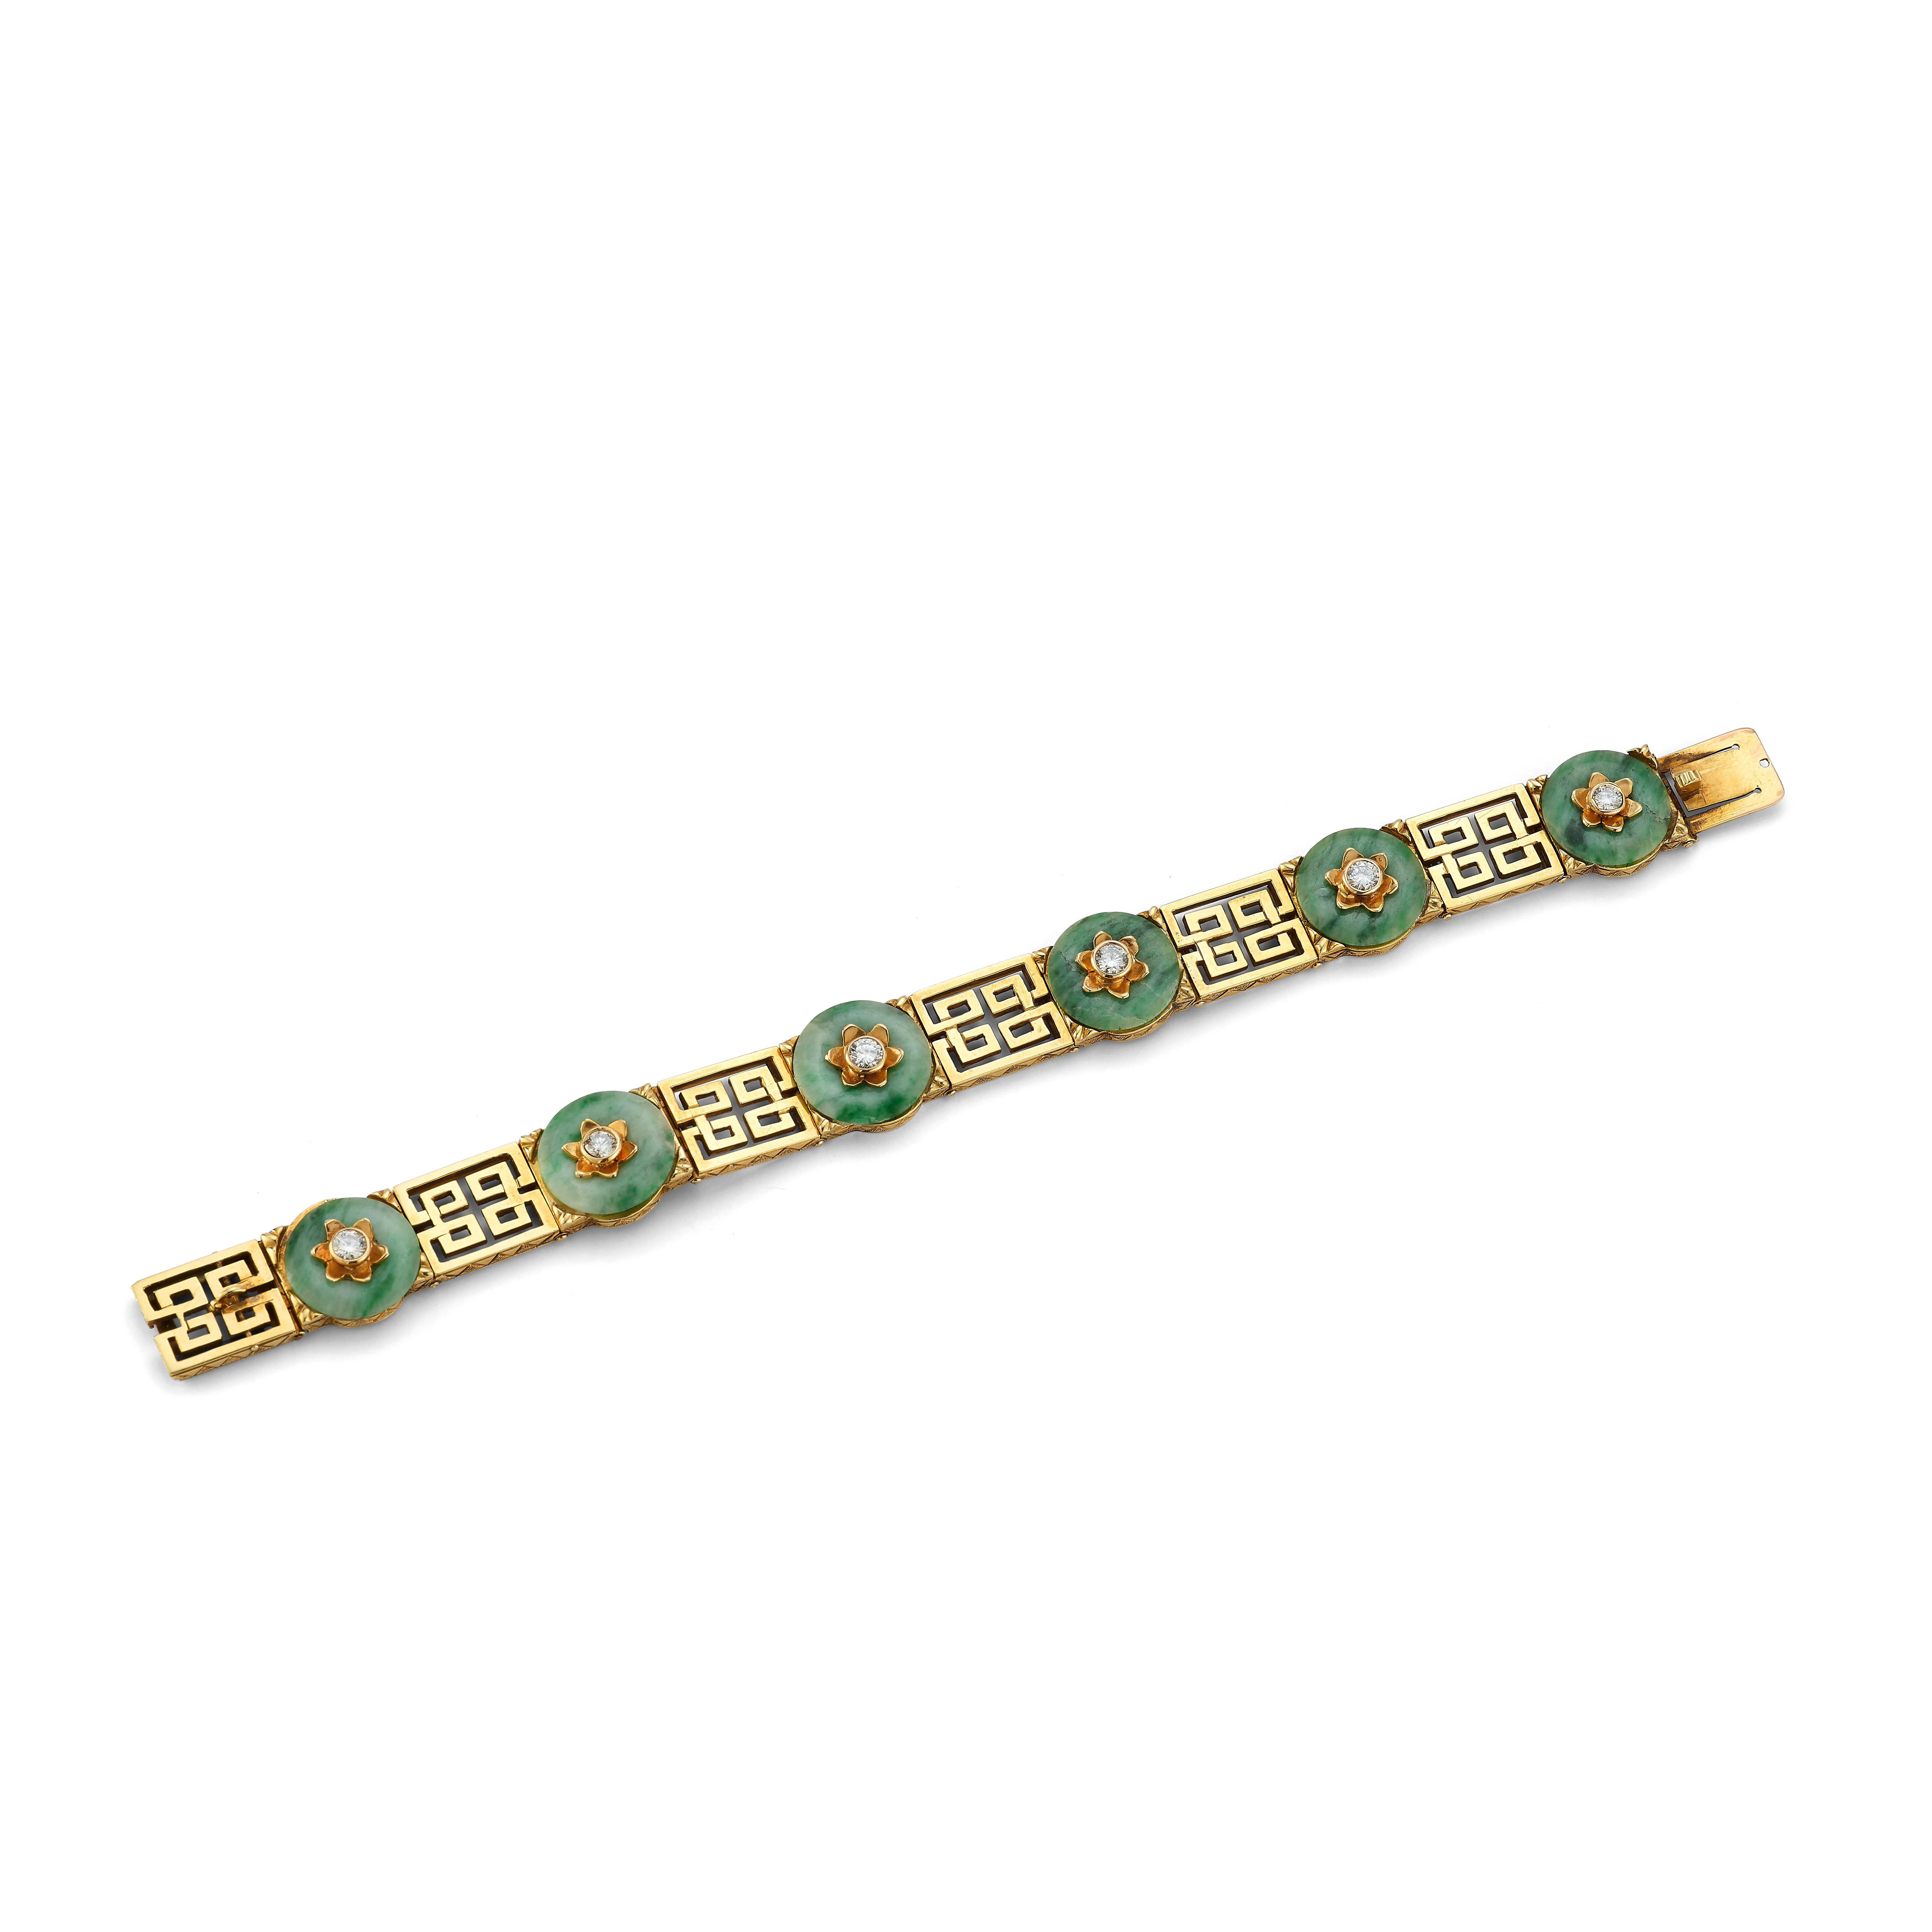 Tiffany & Co Jade & diamant Bracelet en or.

Un bracelet composé de 6 disques de jade avec 6 motifs de fleurs en diamant et or sur le dessus de chaque jade. Chaque jade est attaché à un lien en or à motif géométrique. 

Dimensions : 7